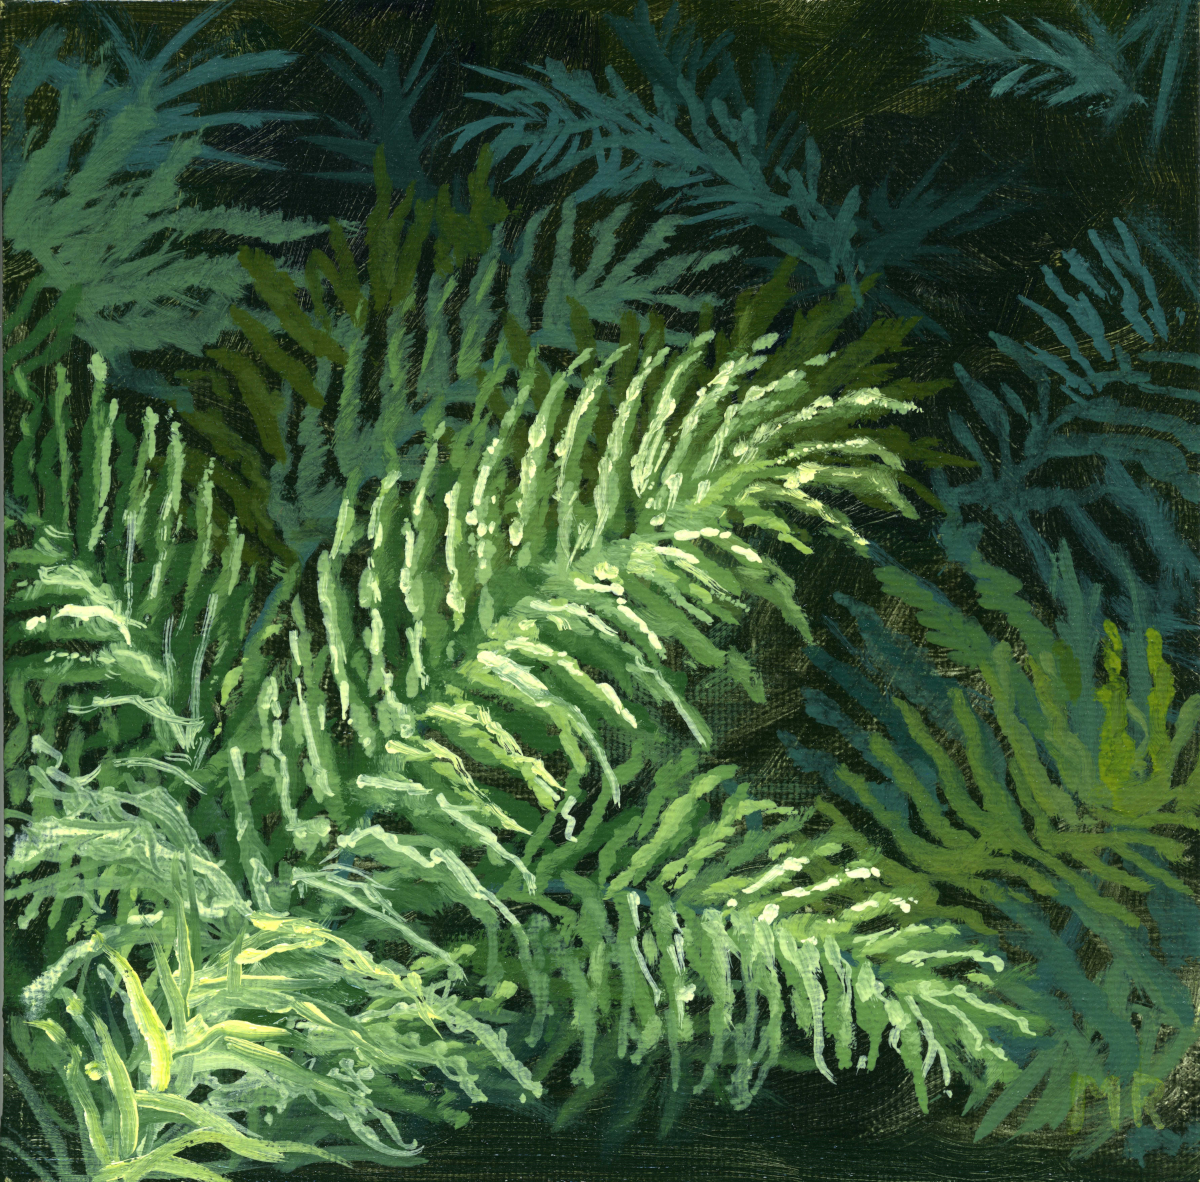 Lush Ferns
